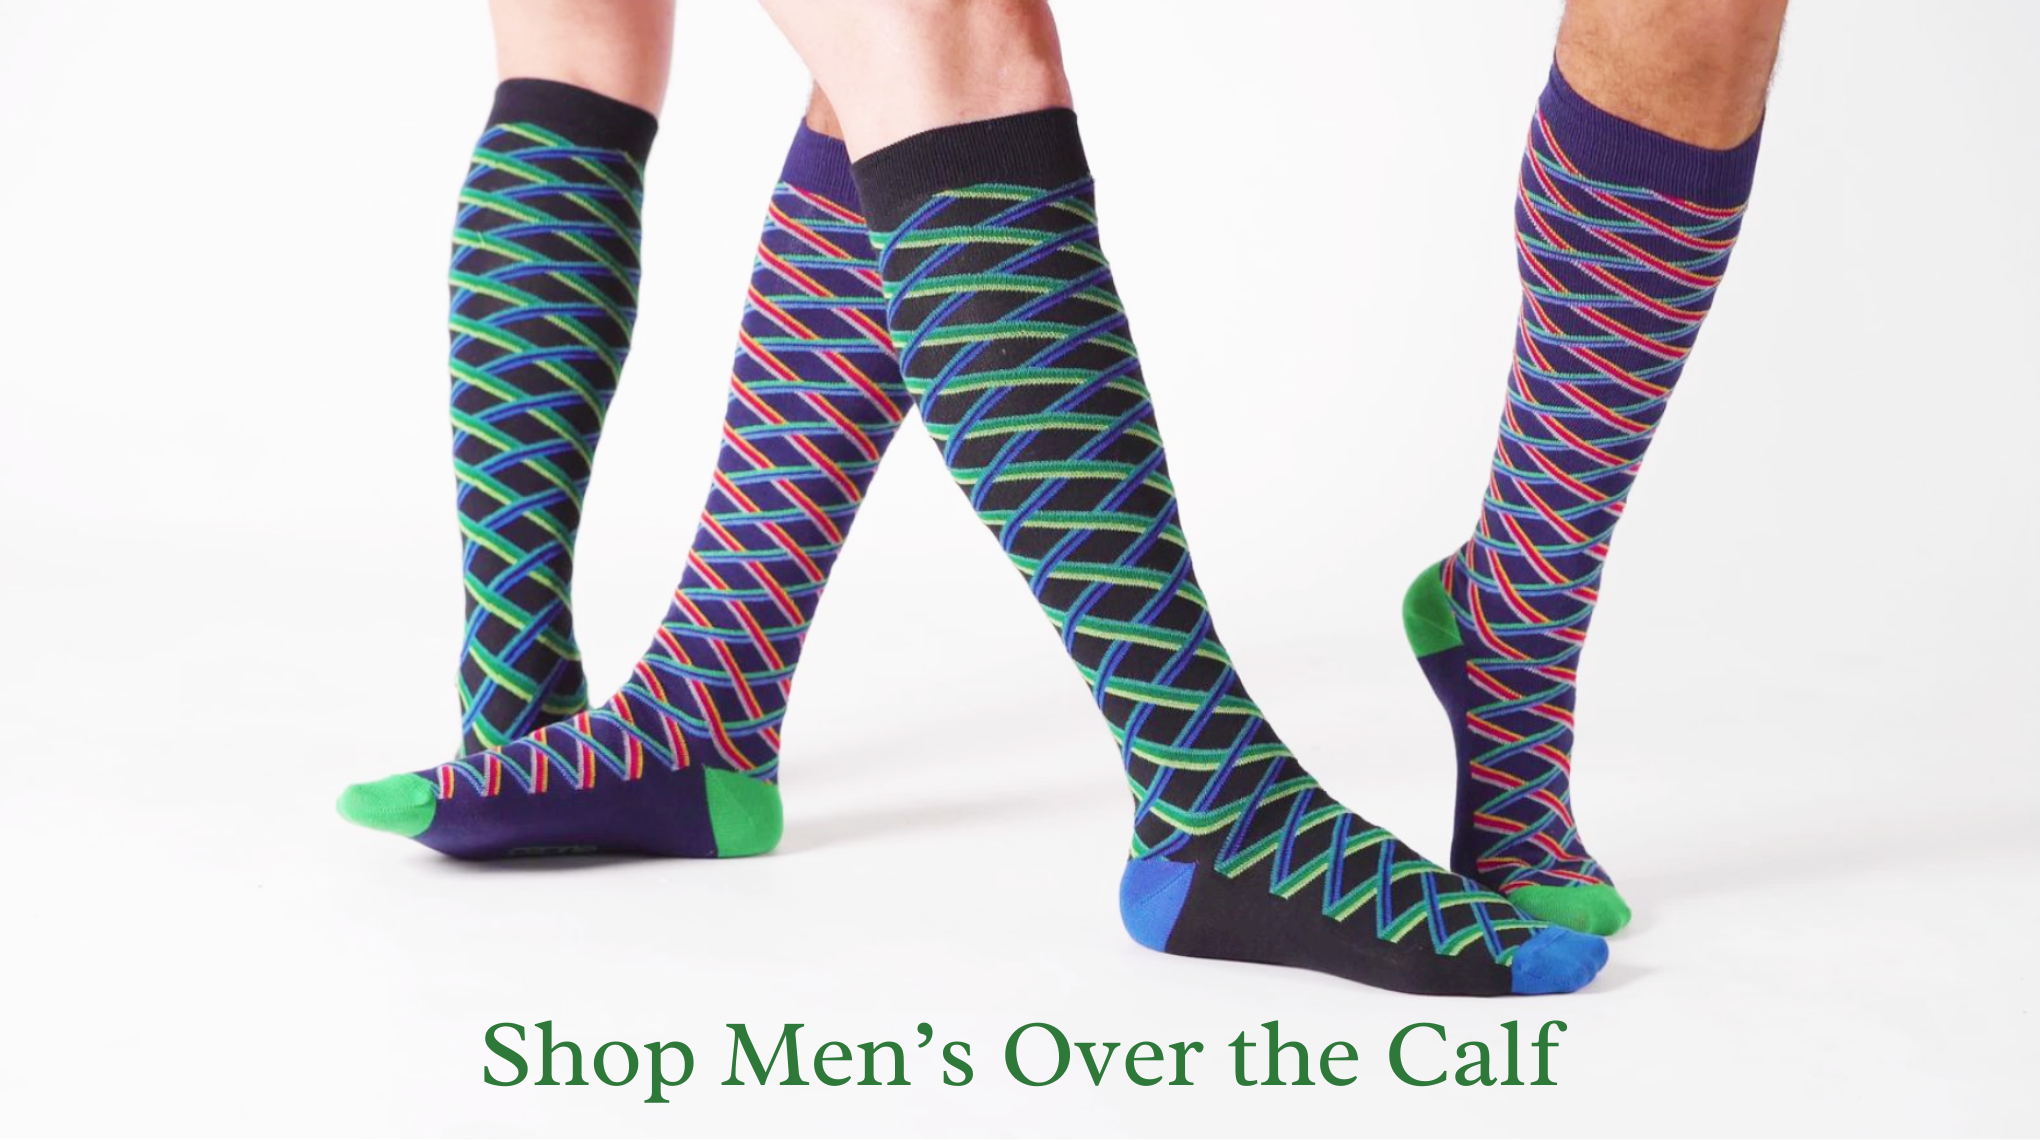 Ozone Socks, Designer Socks For Women and Men